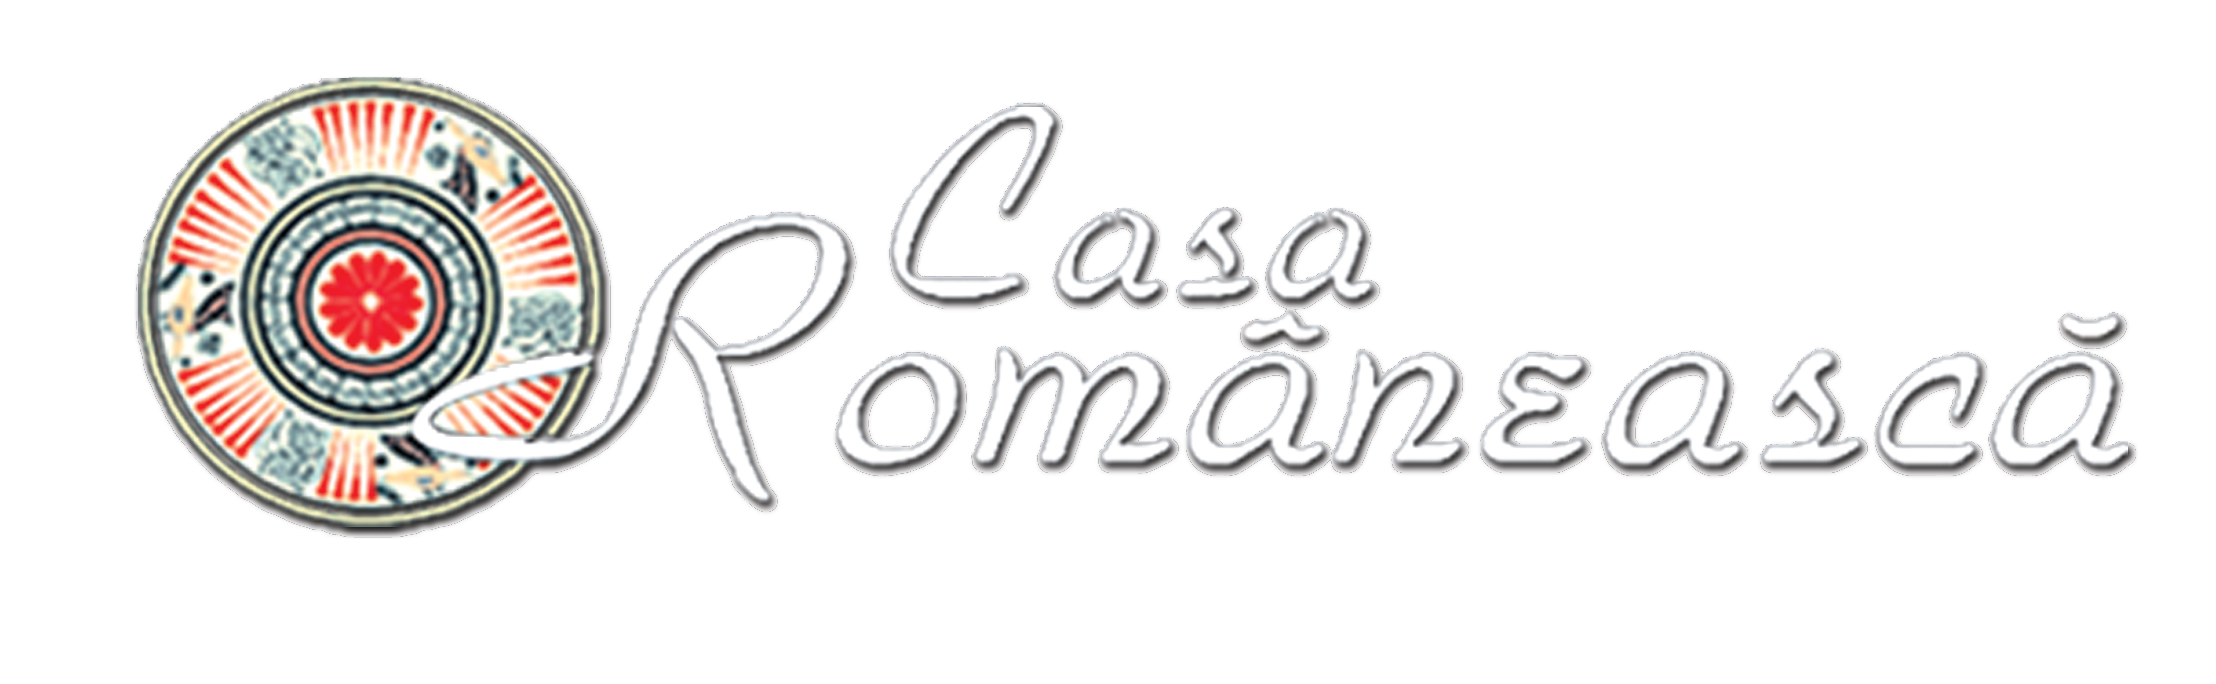 Casa Romaneasca Logo photo - 1